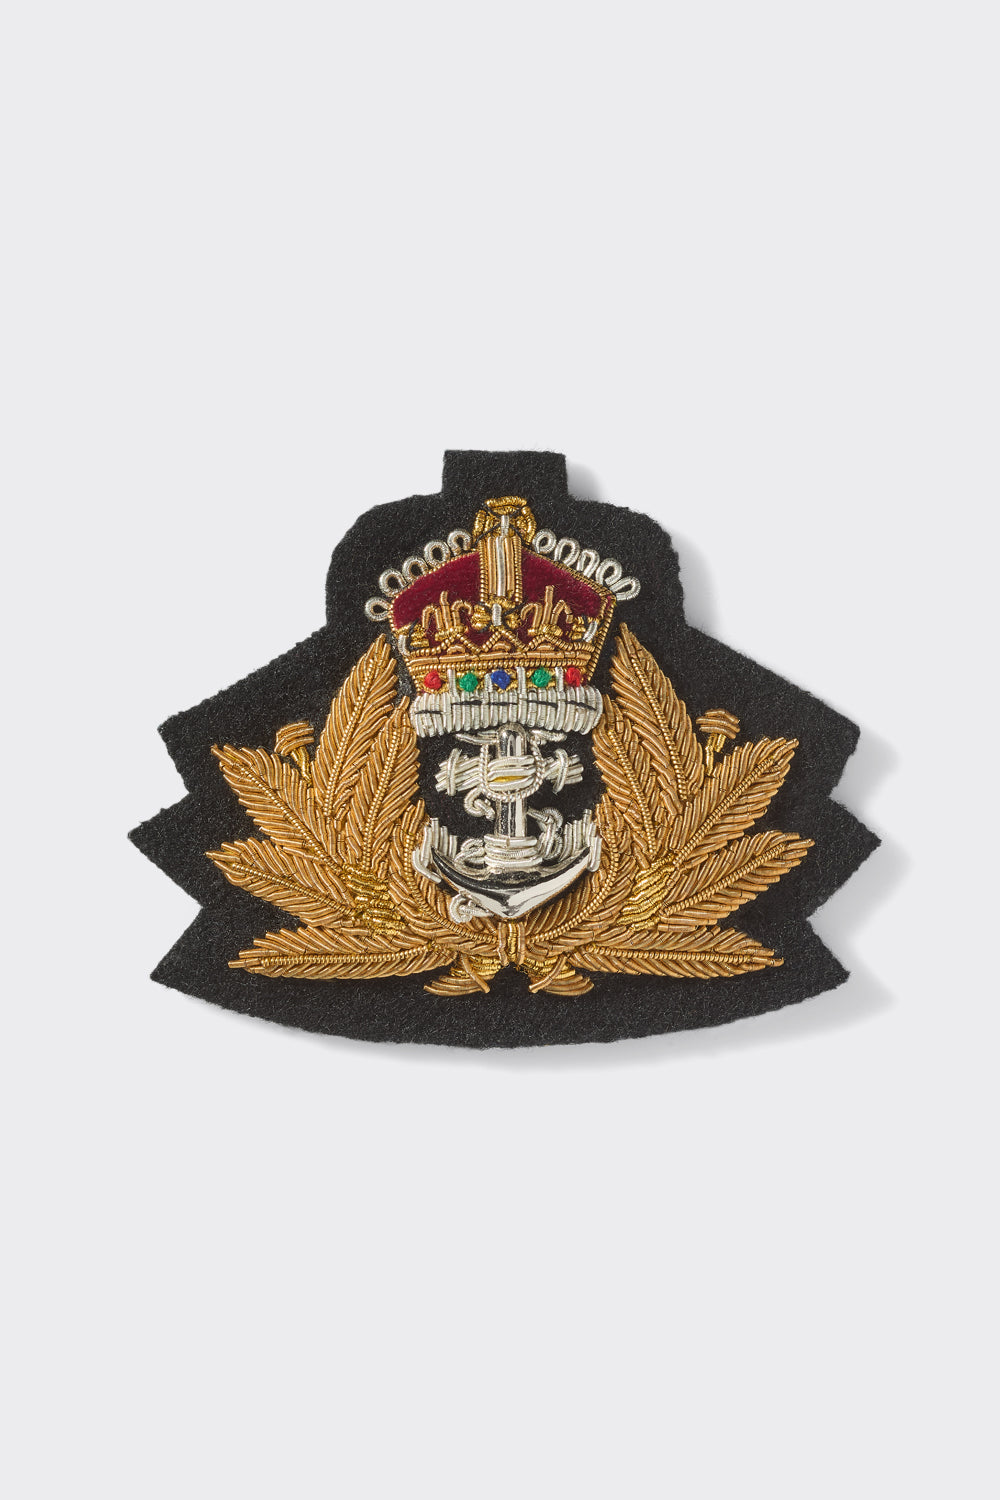 Royal Navy Tudor Crown Beret Badge